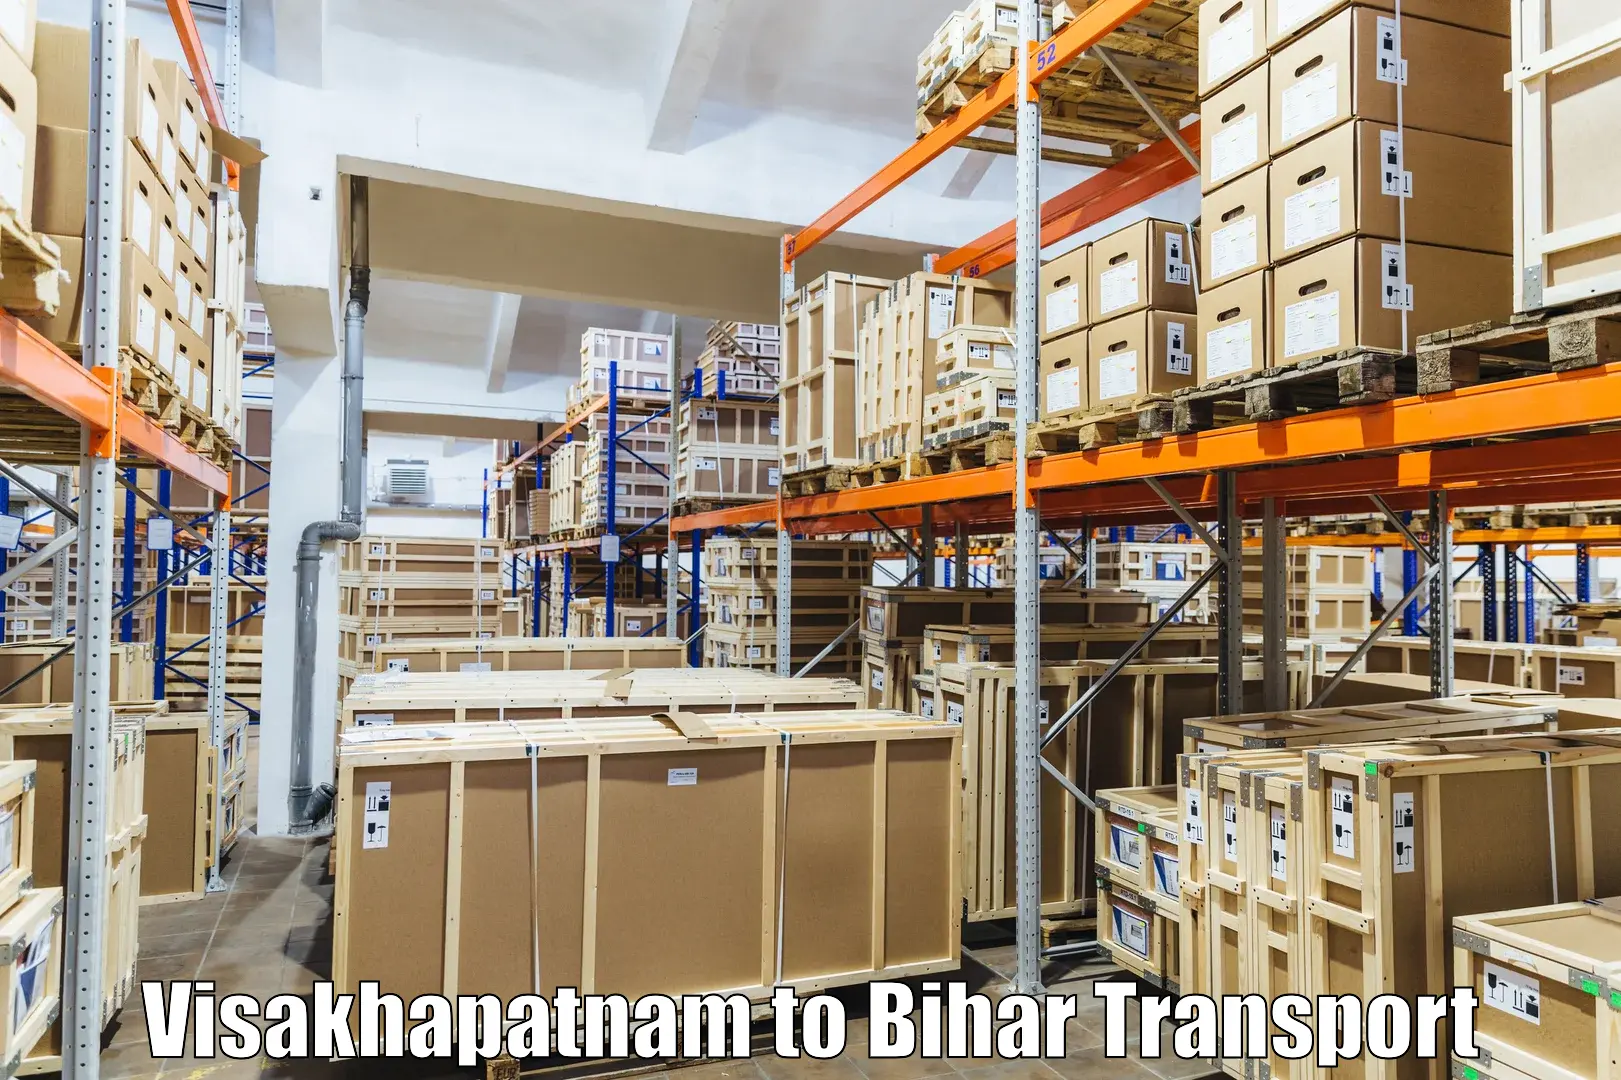 Online transport booking Visakhapatnam to Barhiya